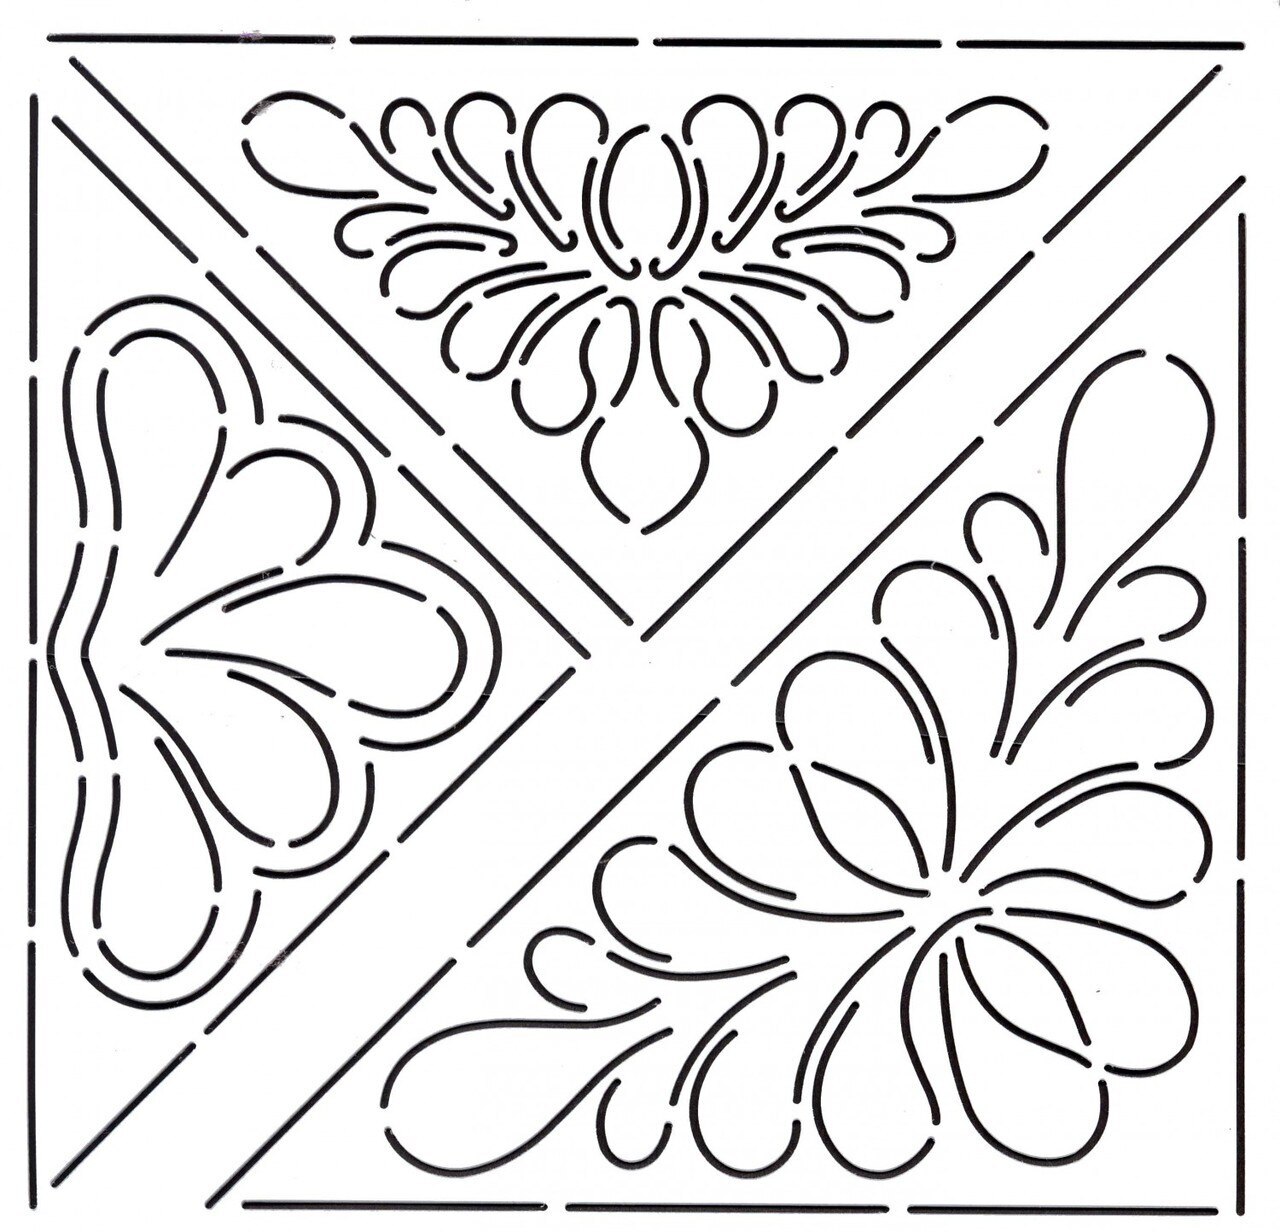 quilt-stencil-3-triangular-designs